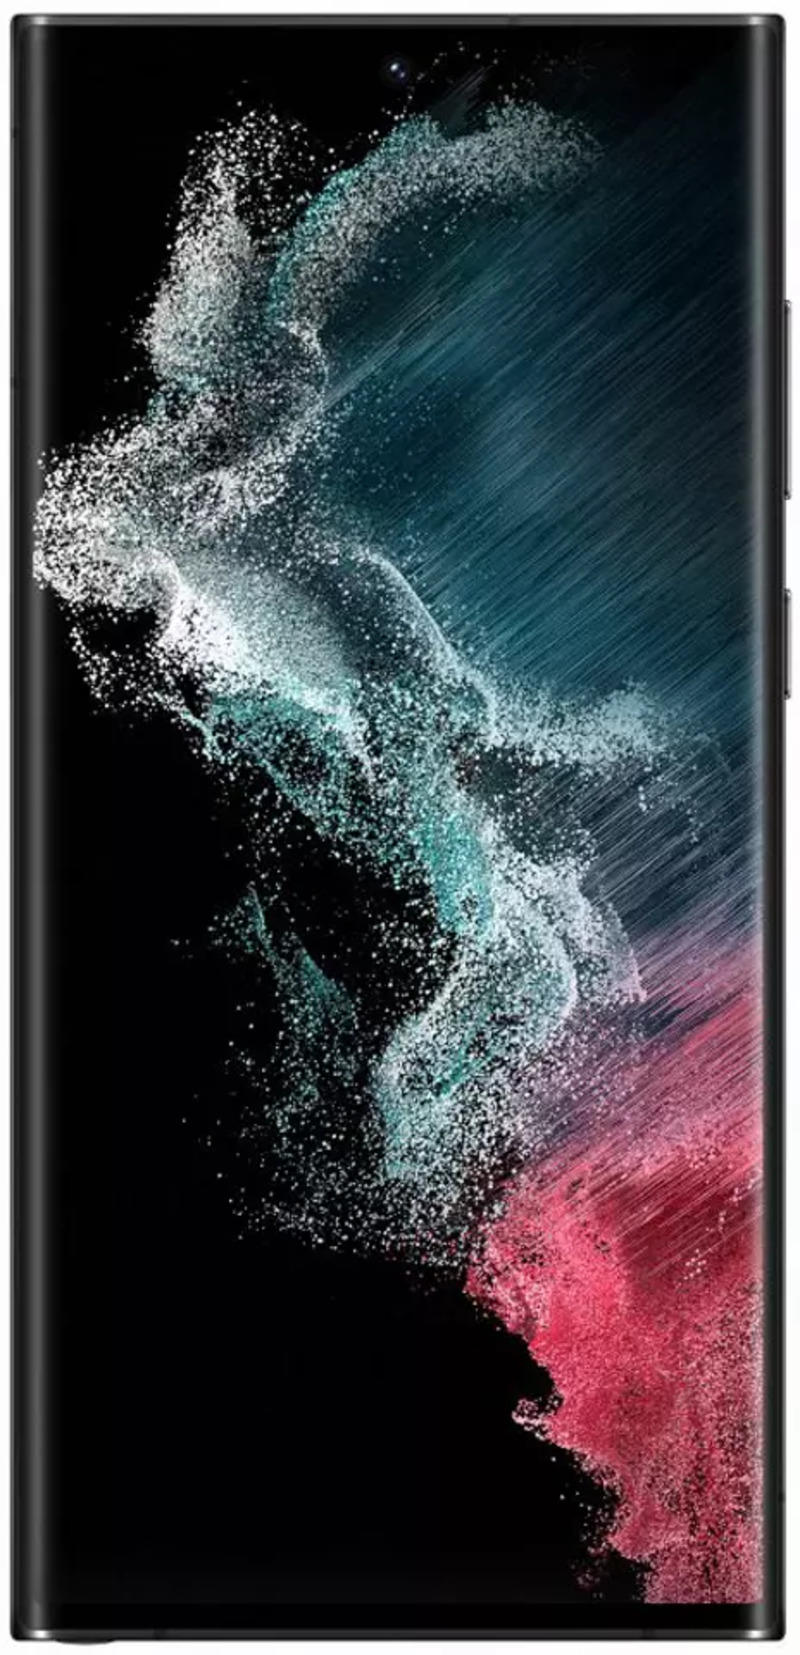 Nếu bạn đang tìm kiếm một chiếc điện thoại cao cấp, hãy cân nhắc Samsung Galaxy S22 Ultra. Được phát hành tại Việt Nam với mức giá vô cùng hấp dẫn, chiếc điện thoại này sẽ là lựa chọn tuyệt vời cho những người yêu thích công nghệ.